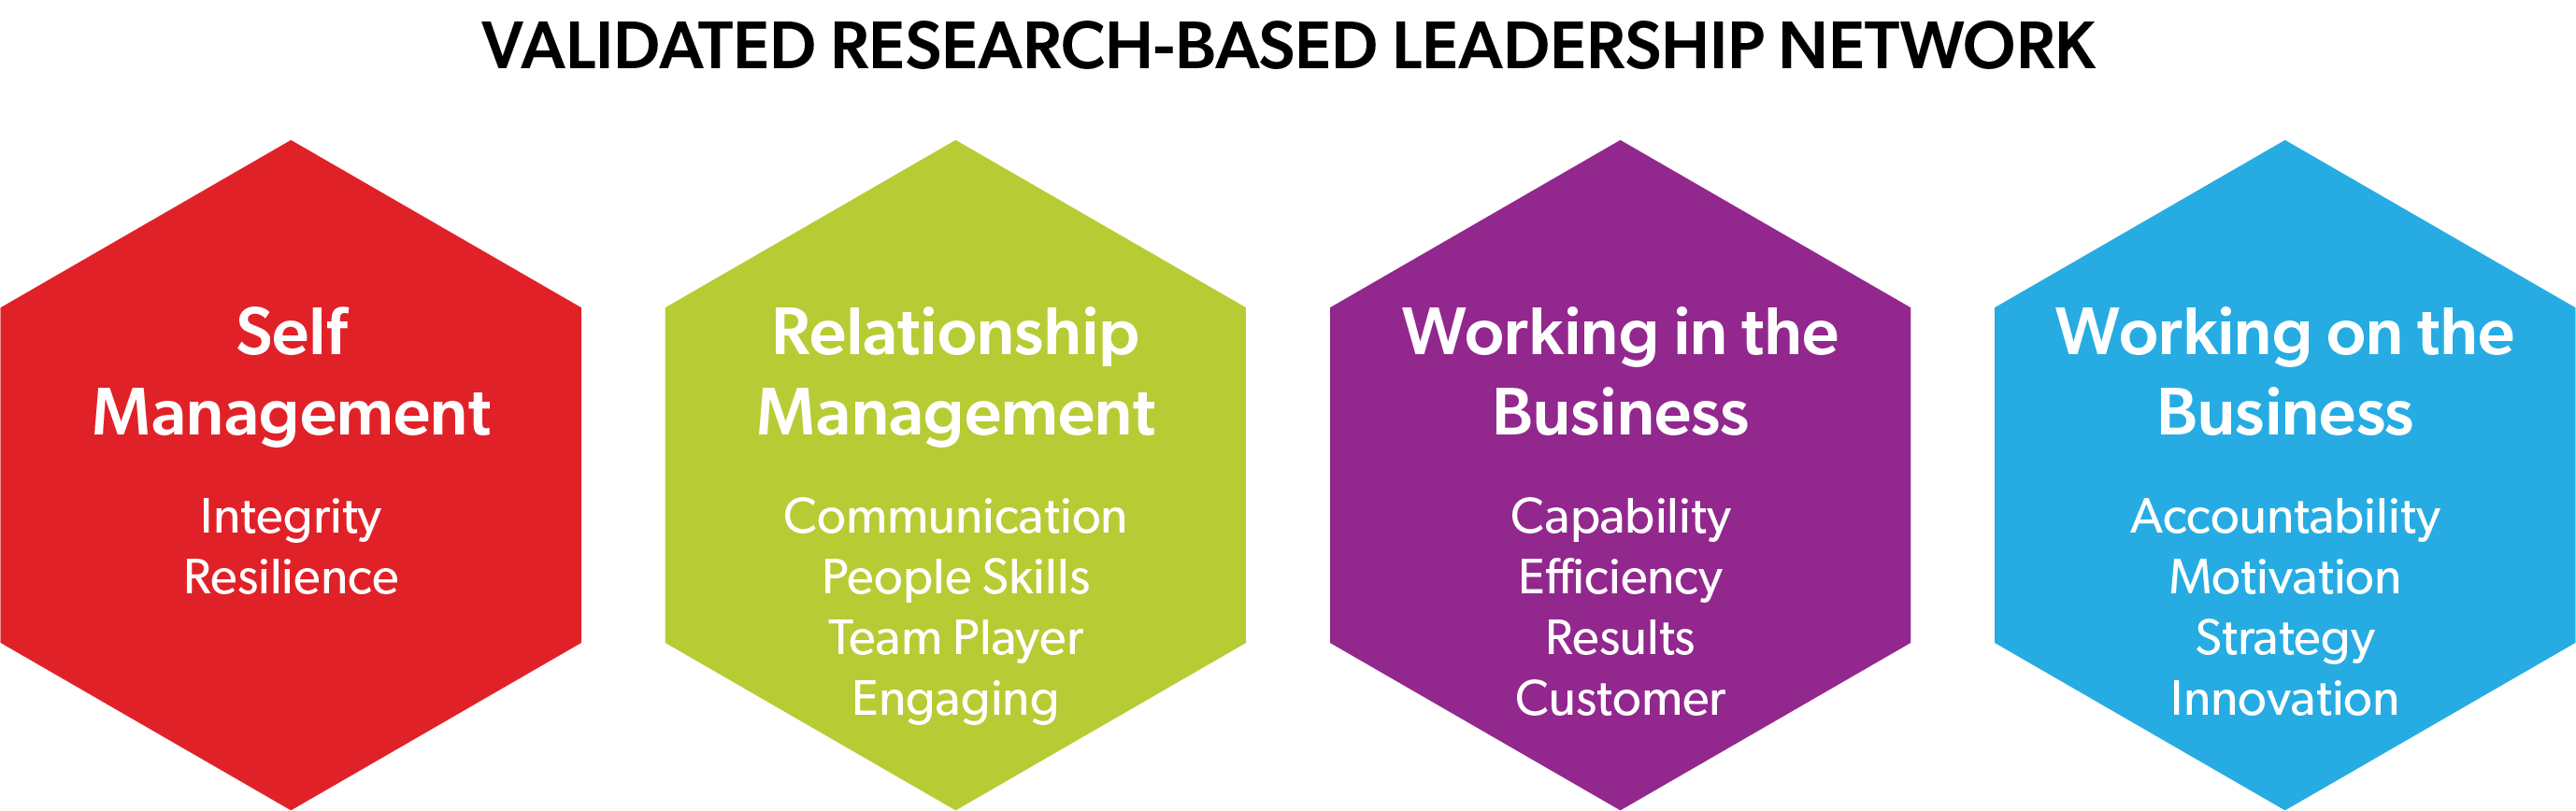 Hogan Leadership Framework